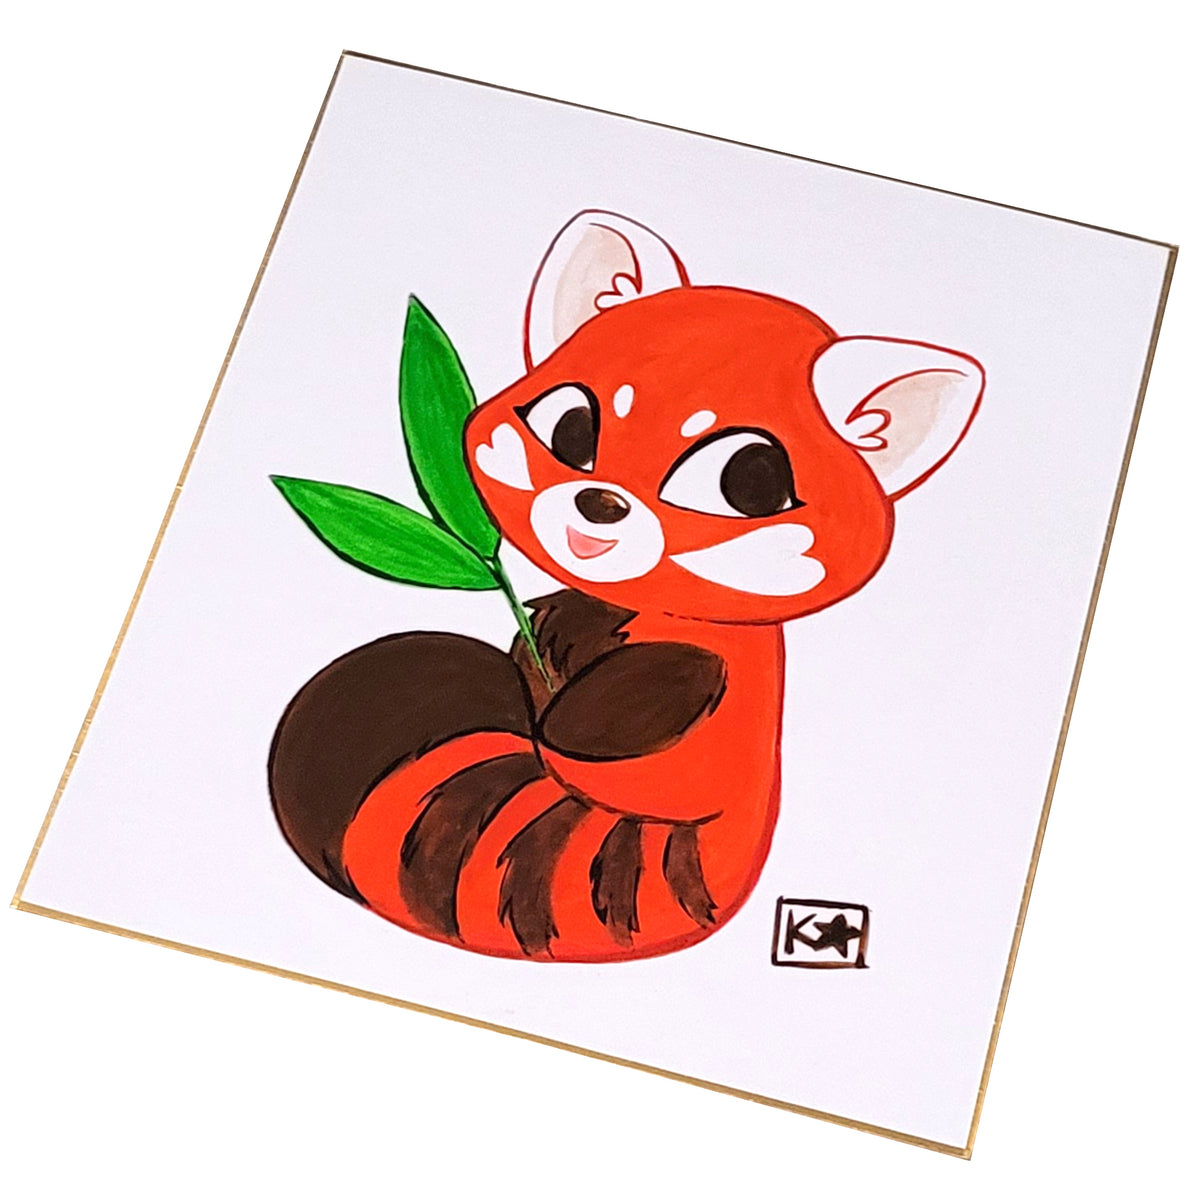 red panda drawings cartoon